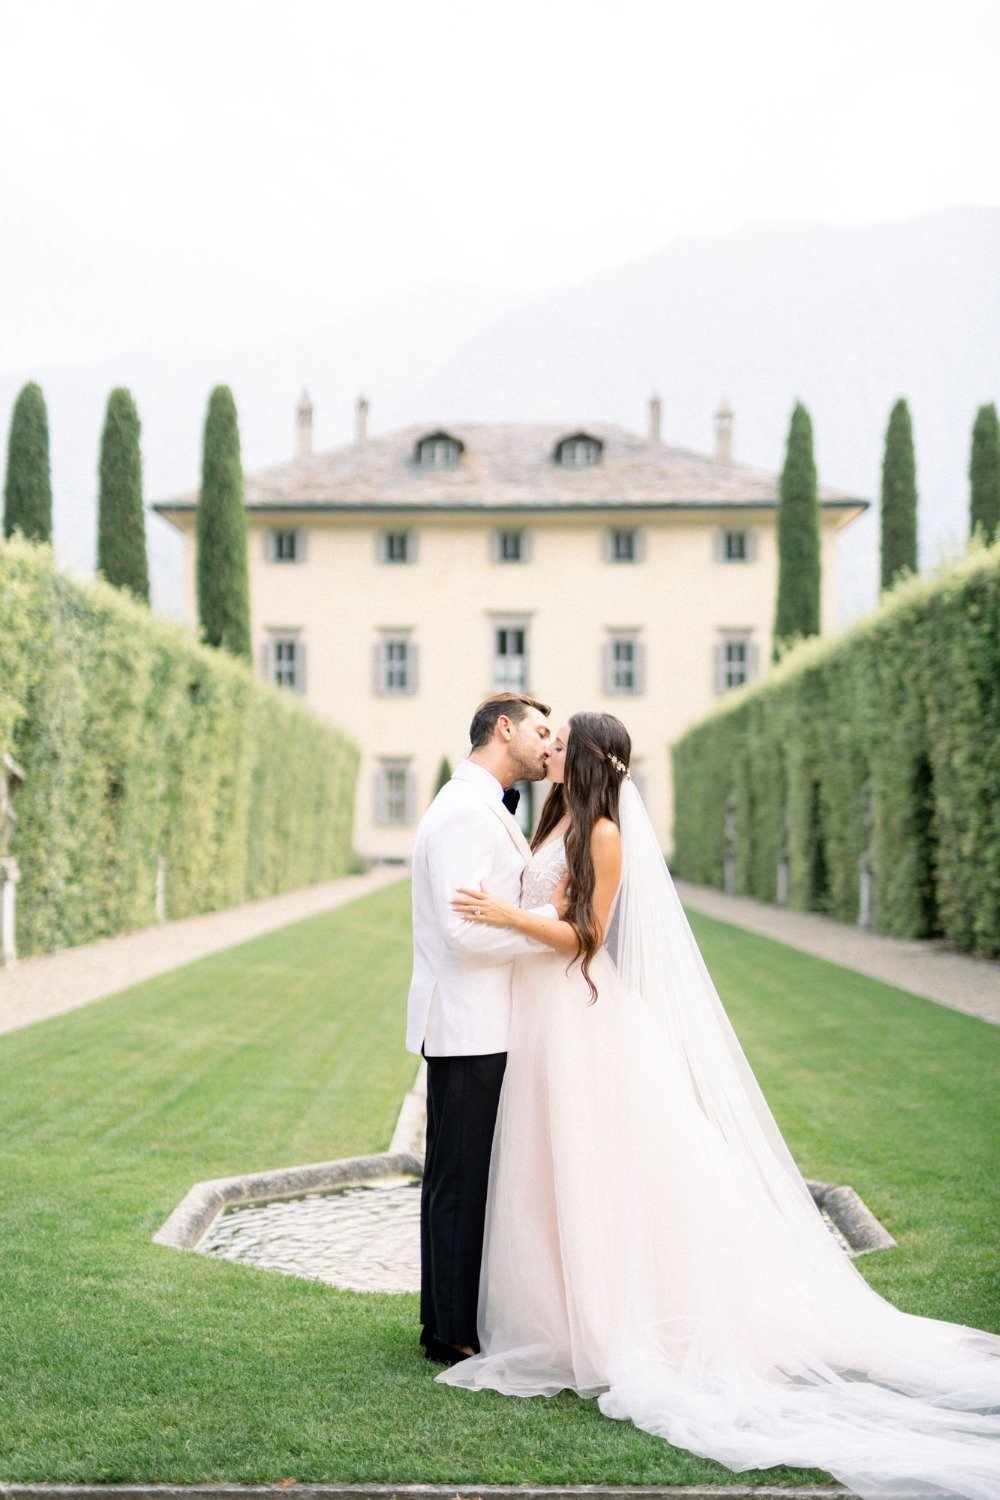 Villa Balbiano wedding venue in Italy